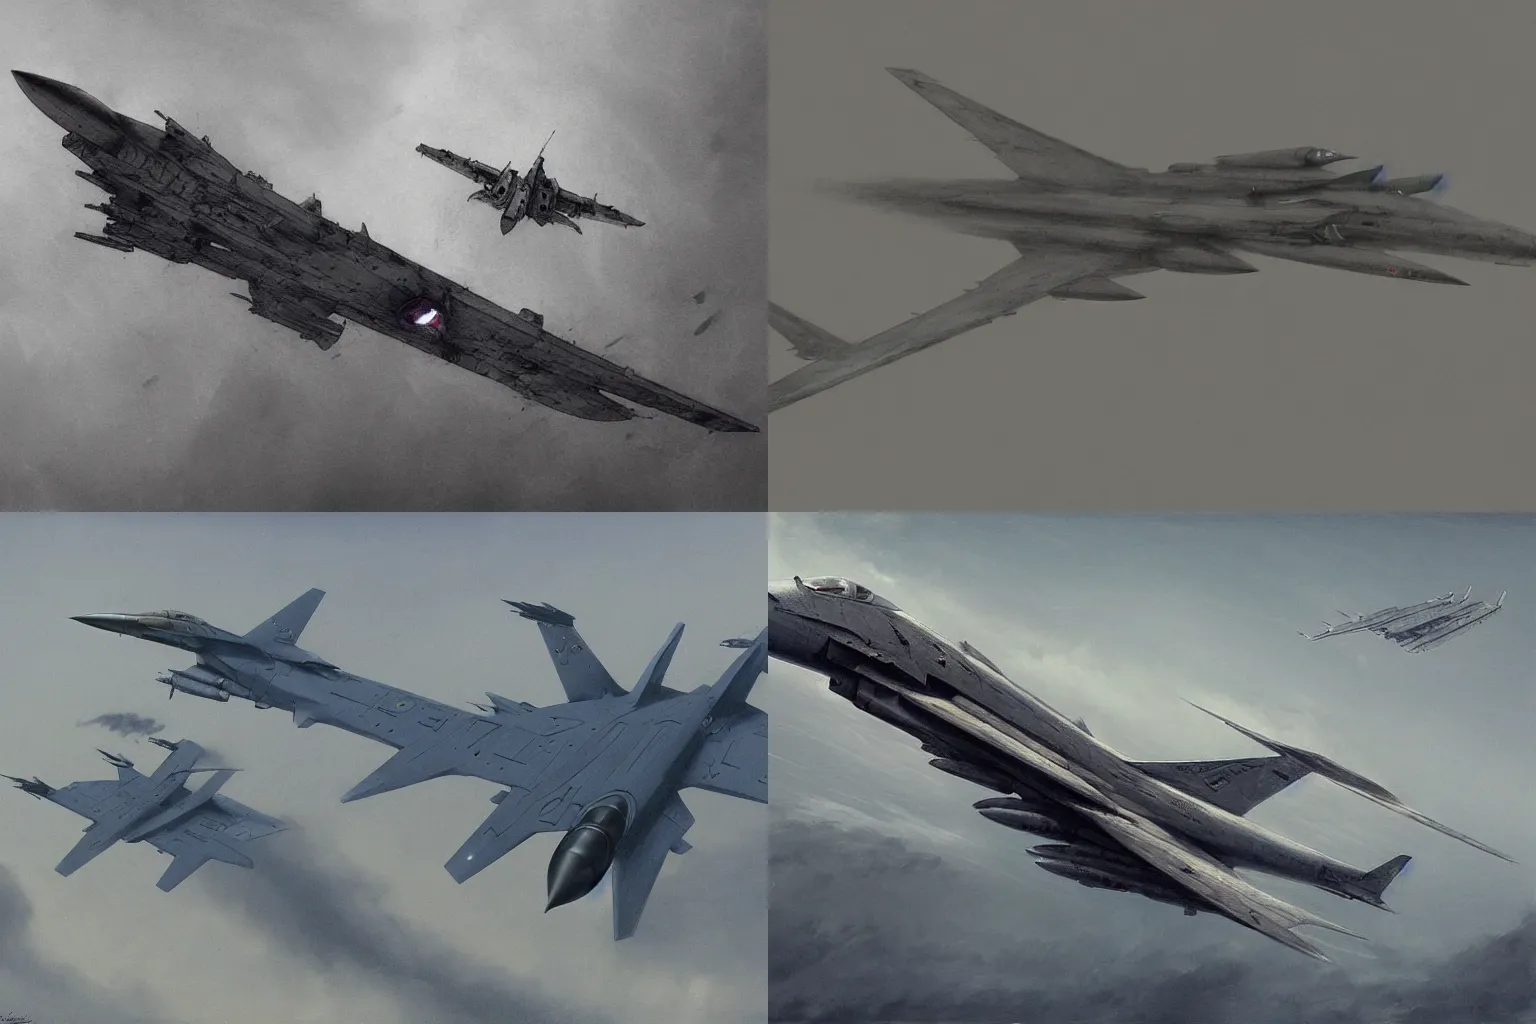 Prompt: fighter jet concept designed by zdislaw beksinski, top secret space plane, tomcat raptor hornet falcon, style of john kenn mortensen, style of greg rutkowski